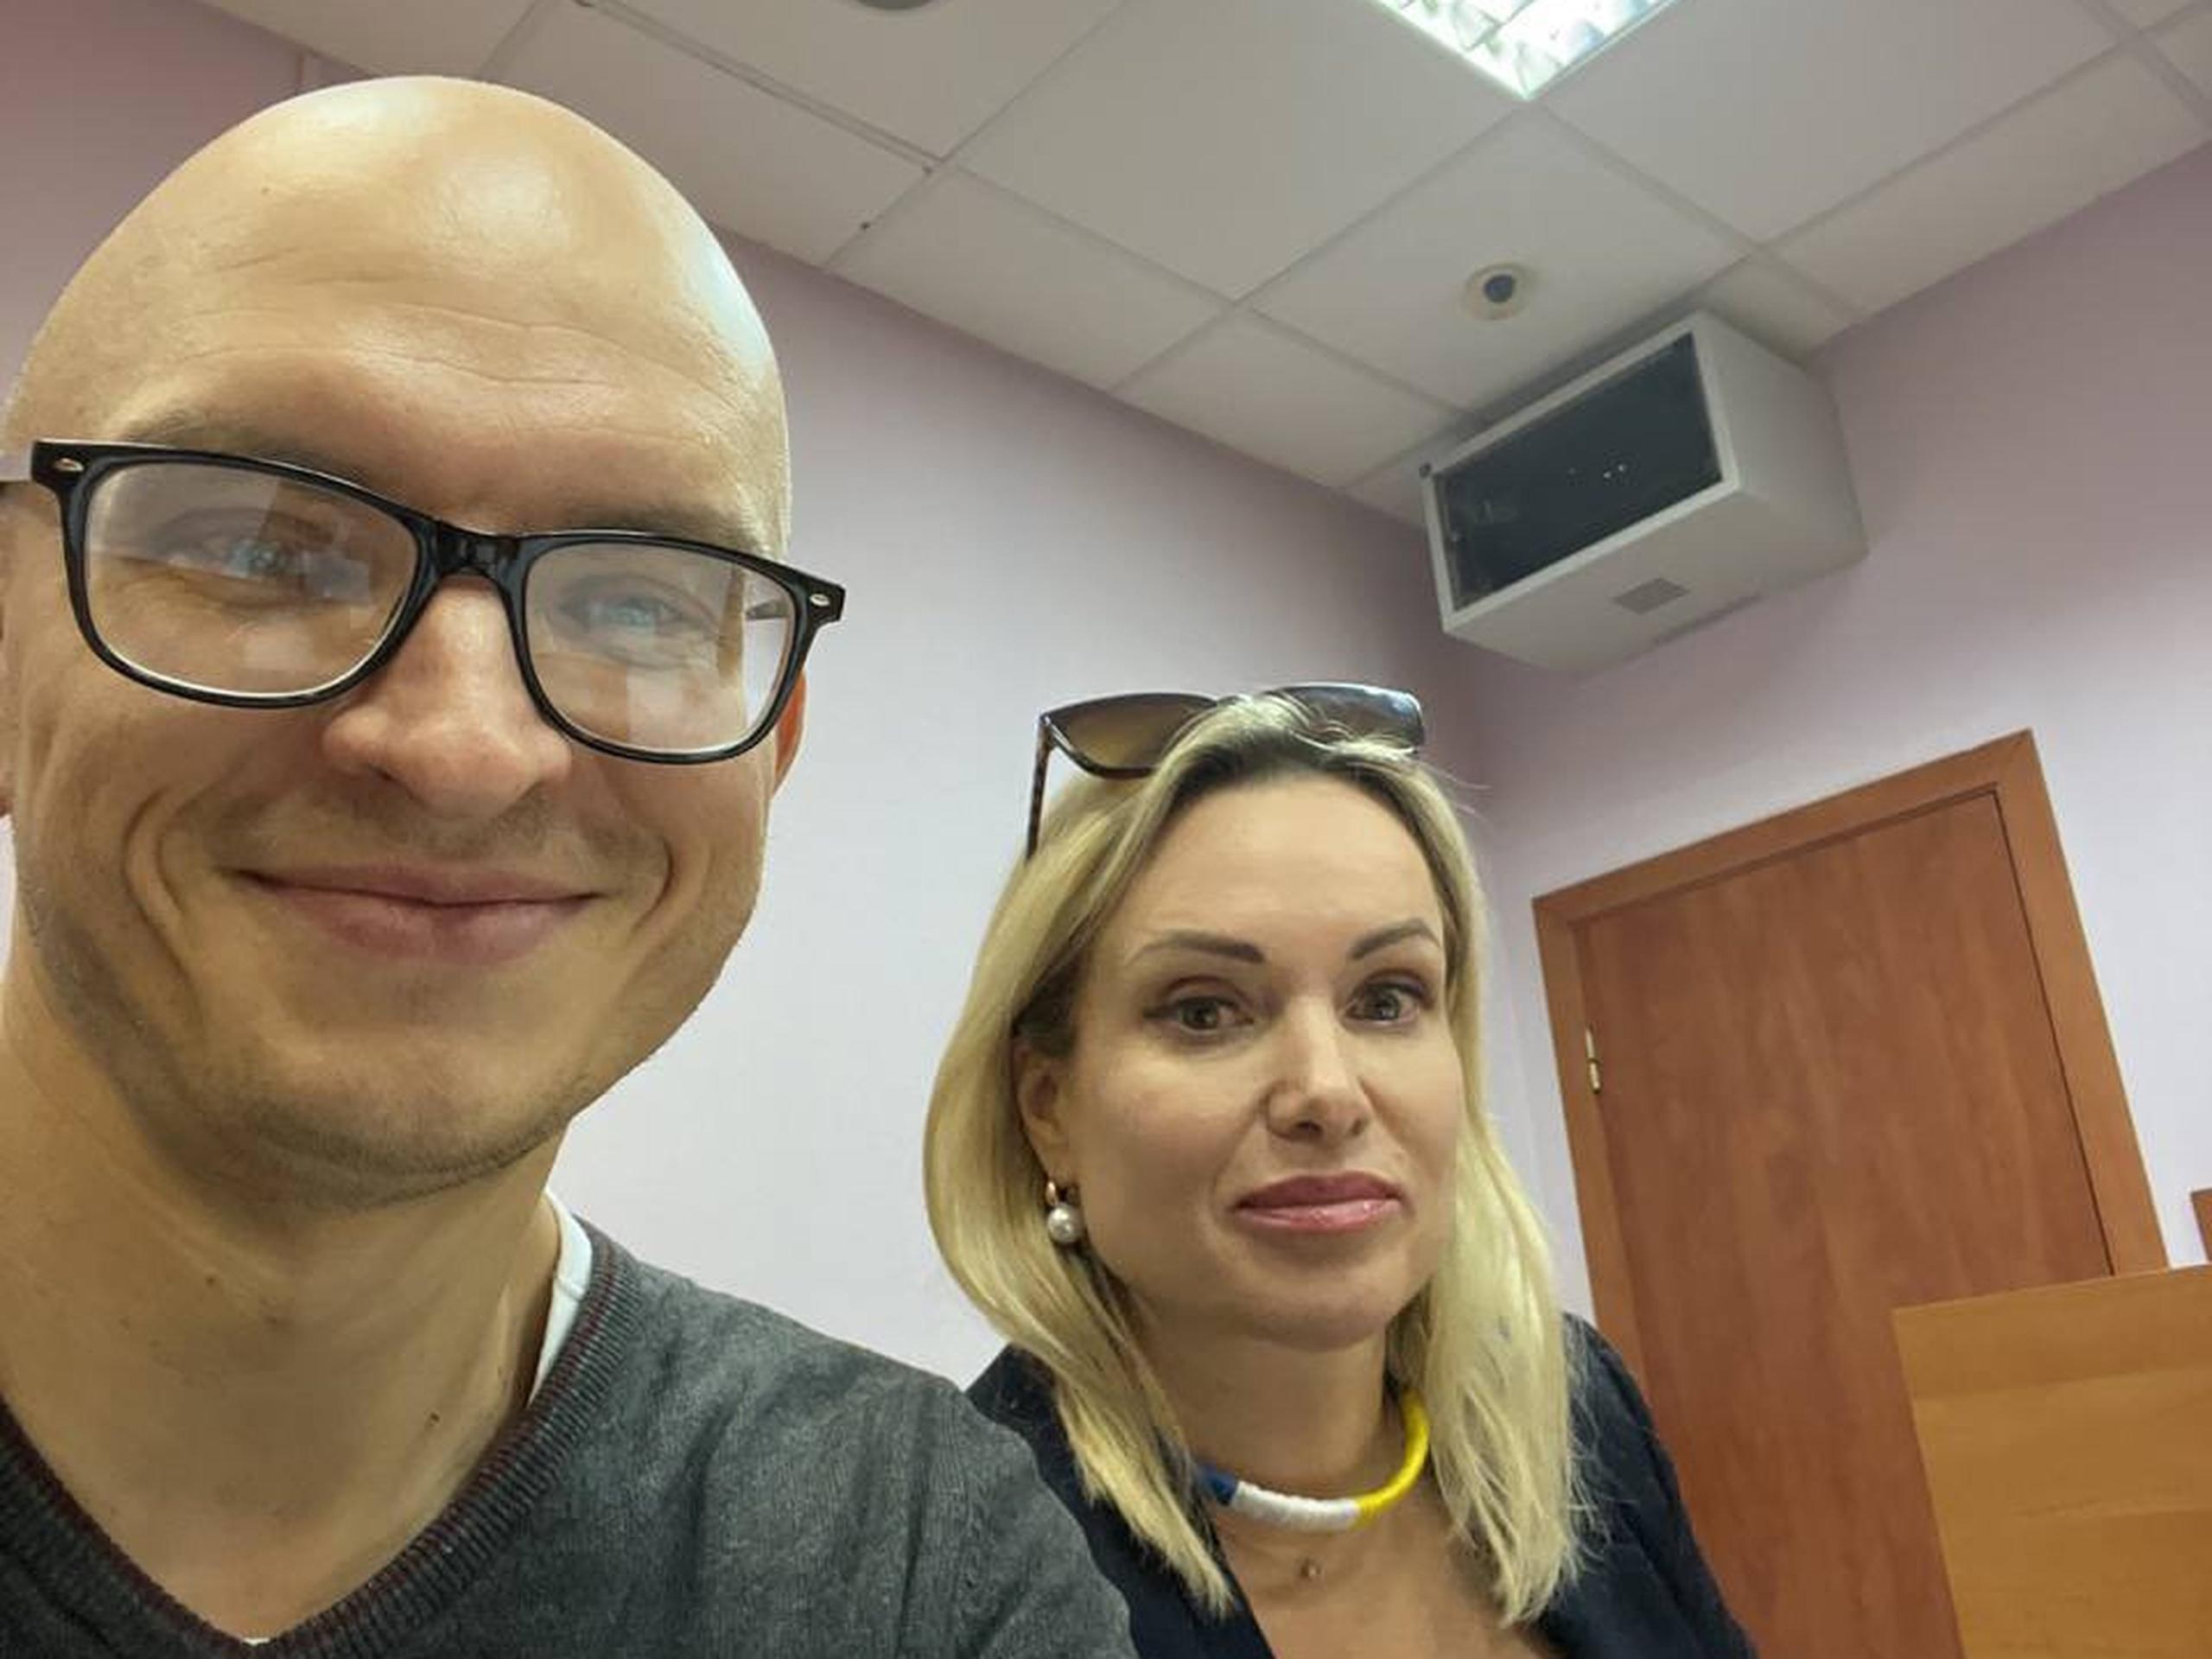 La comunicadora Marina Ovsyannikova, que reveló en unas declaraciones grabadas ser de padre ucraniano y madre rusa, divulgó una foto donde se encontraba acompañada de su abogado, Anton Gashinsky.